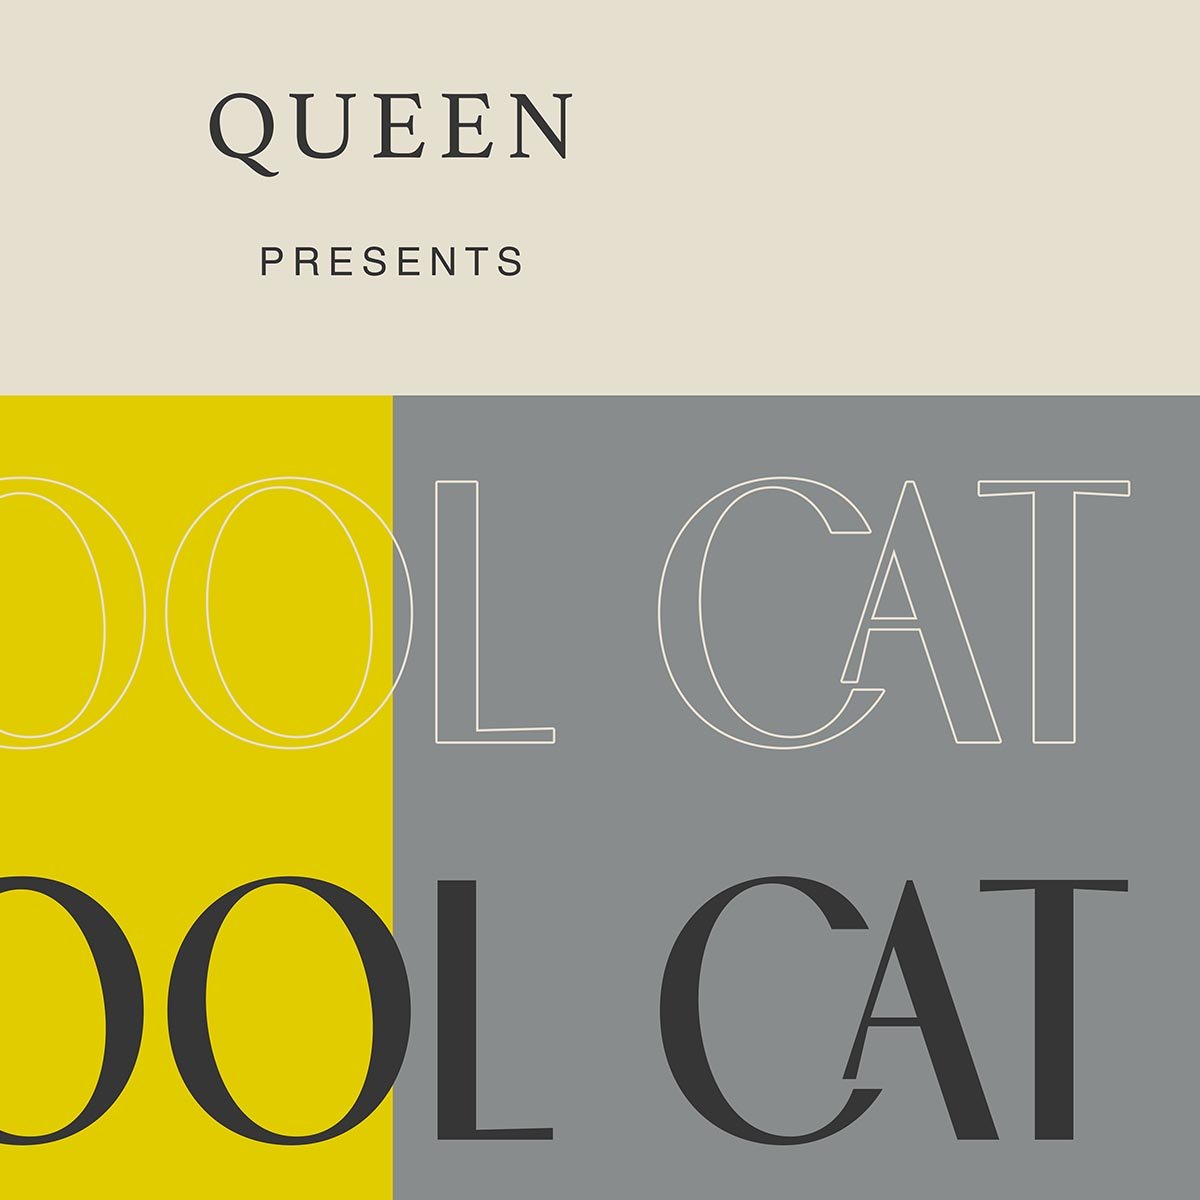 Cool Cat by Queen